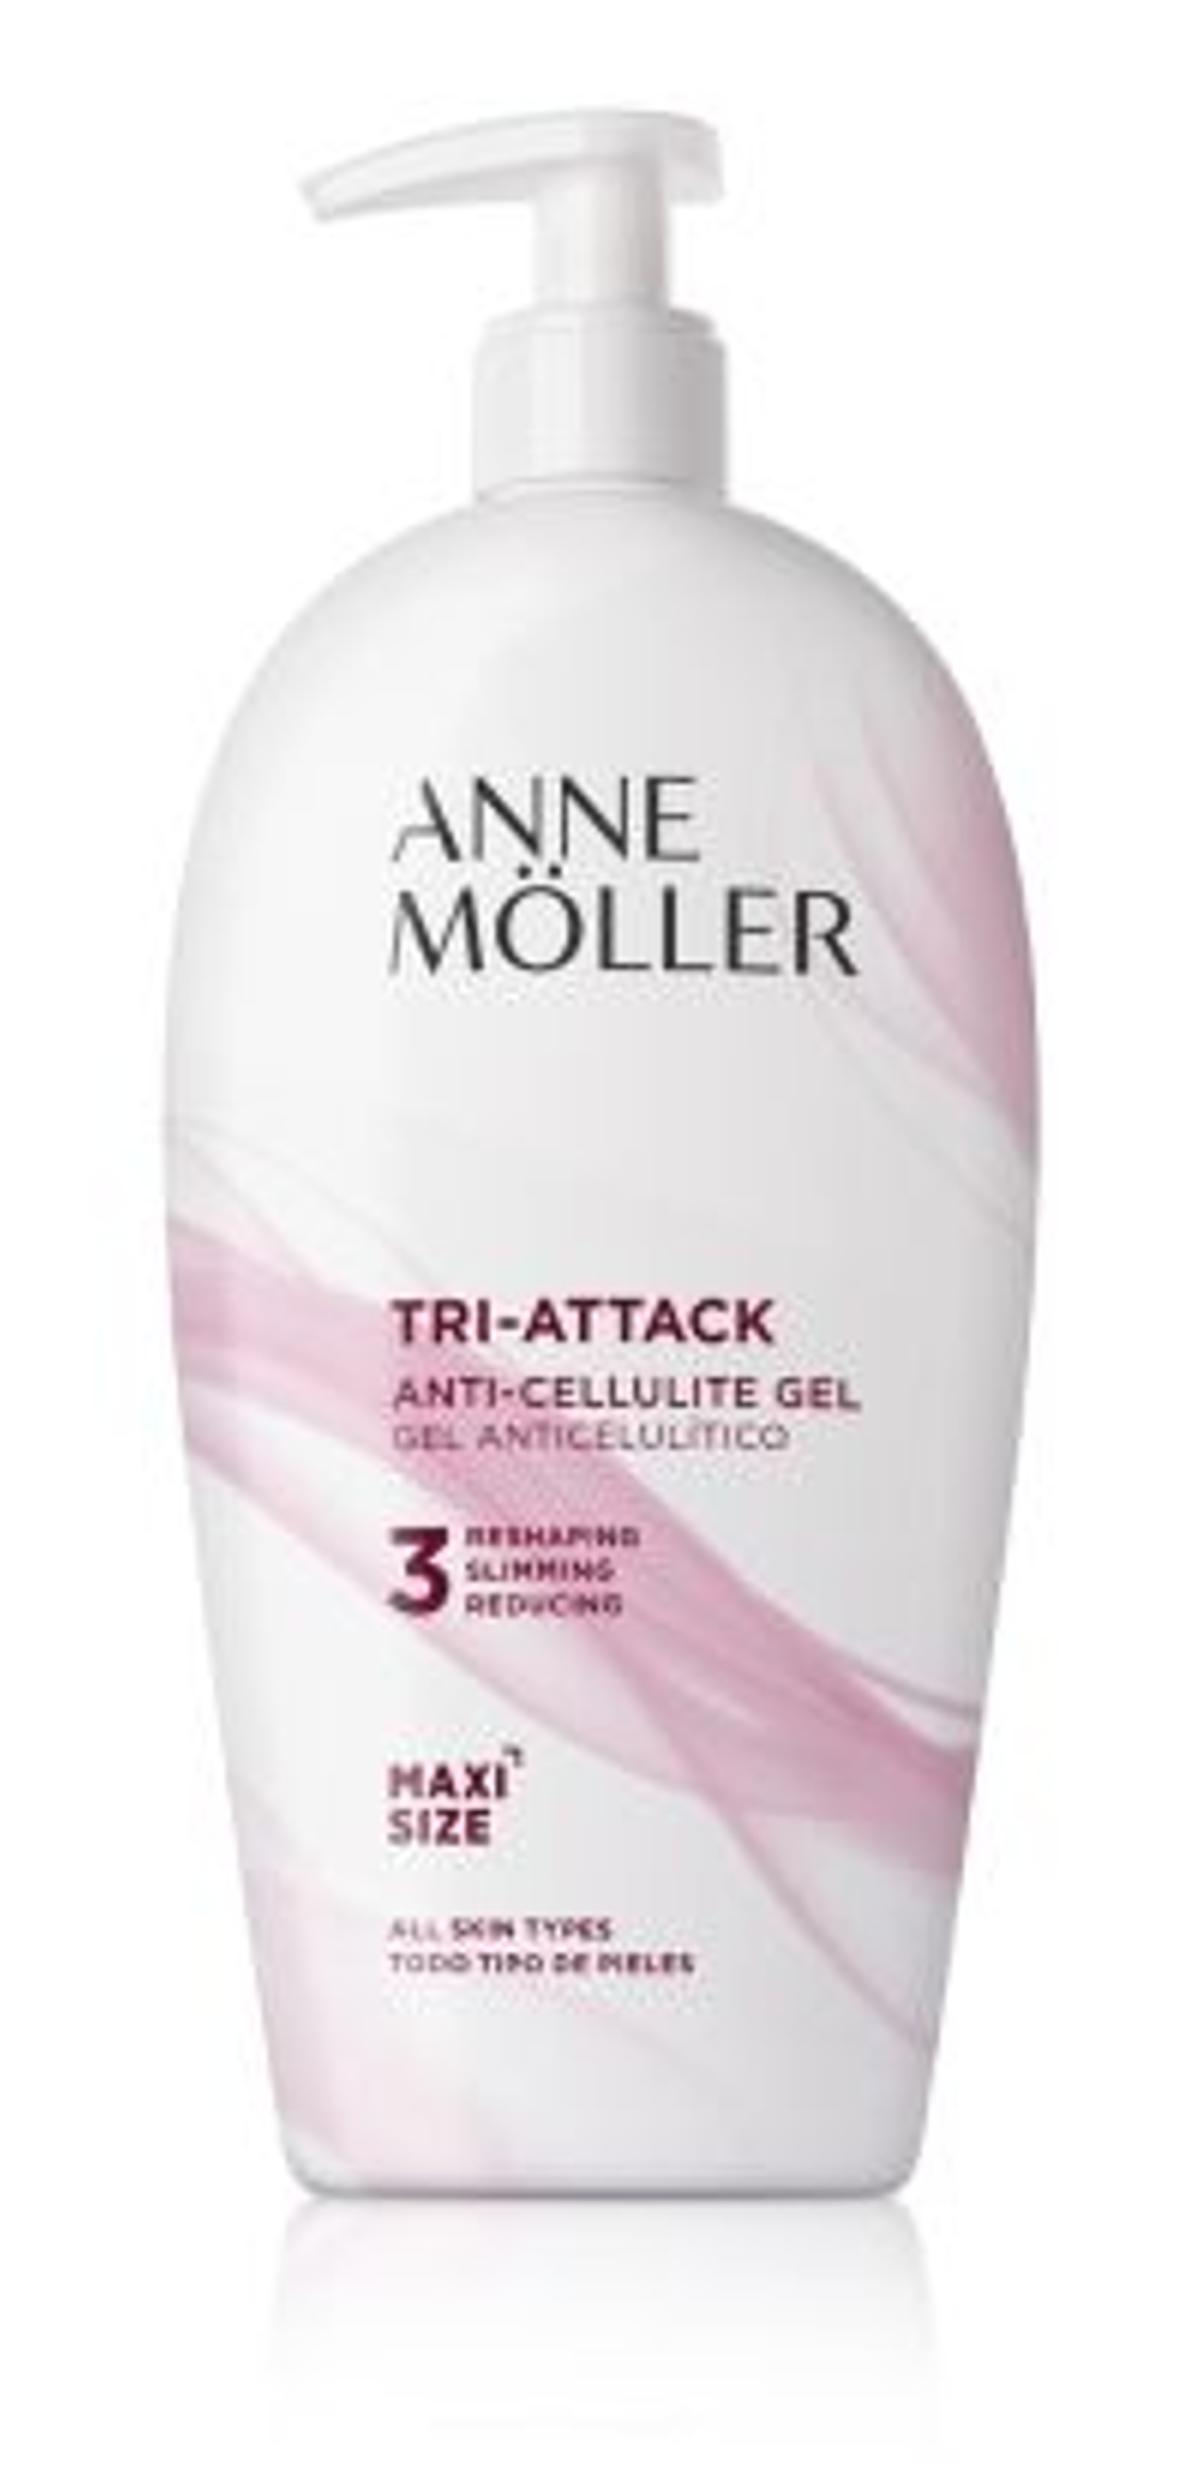 ANNE MÖLLER. Gel anticelulítico ‘Tri-Attack’ (400 ml).